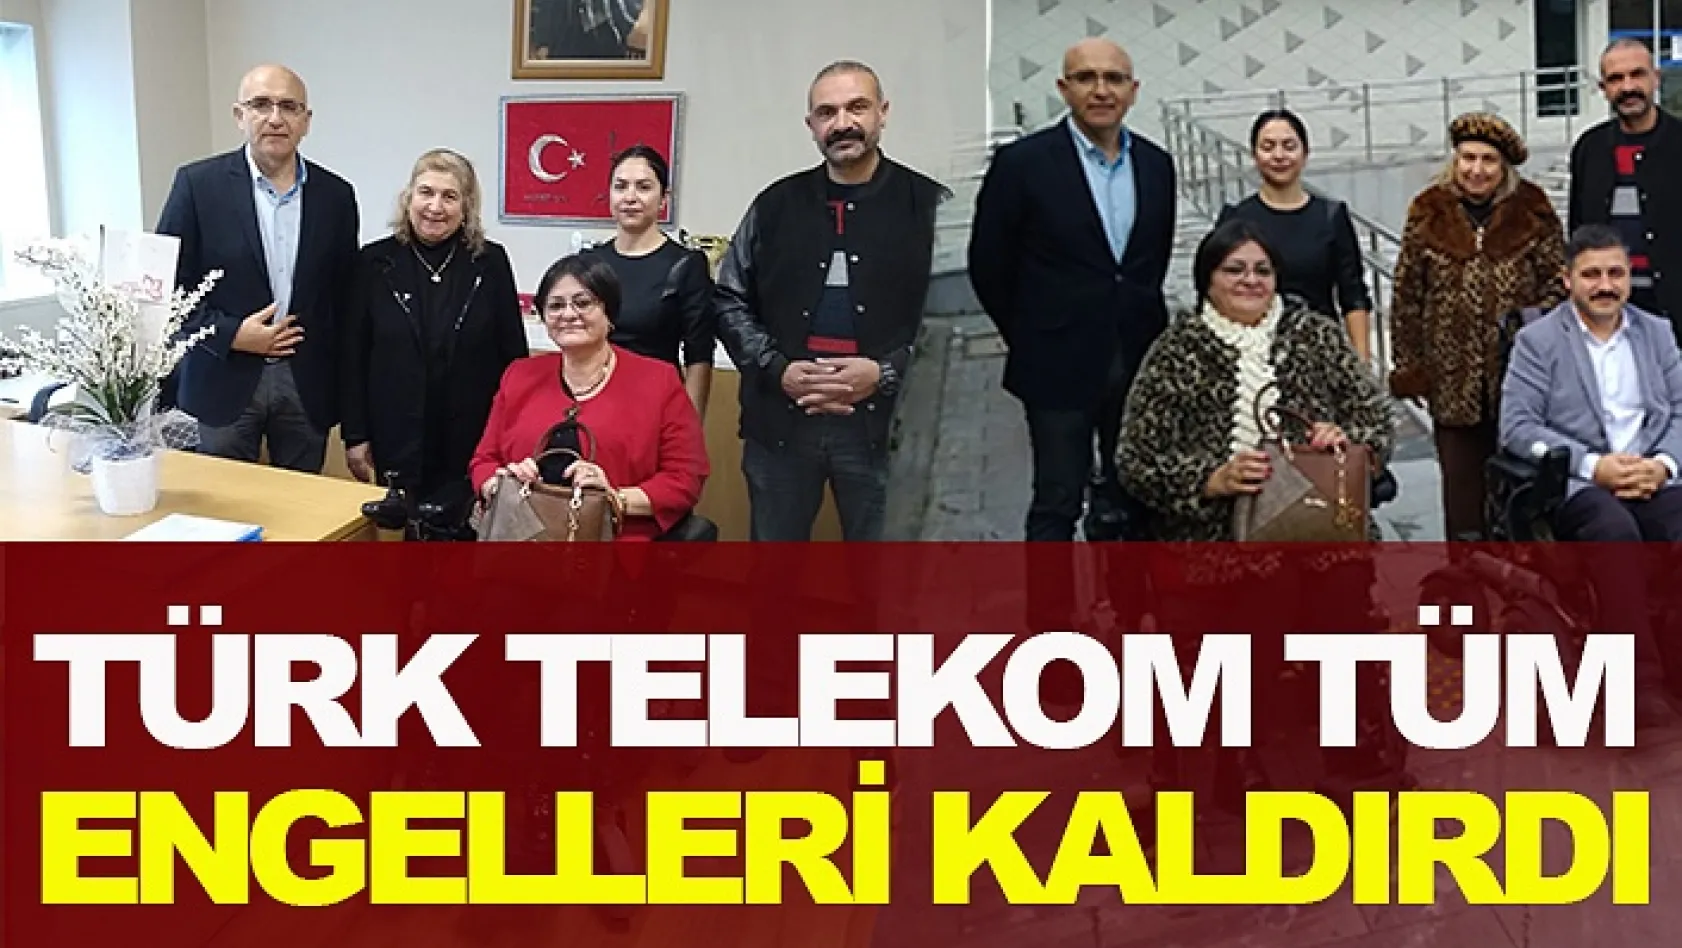 Türk Telekom Tüm Engelleri Kaldırdı